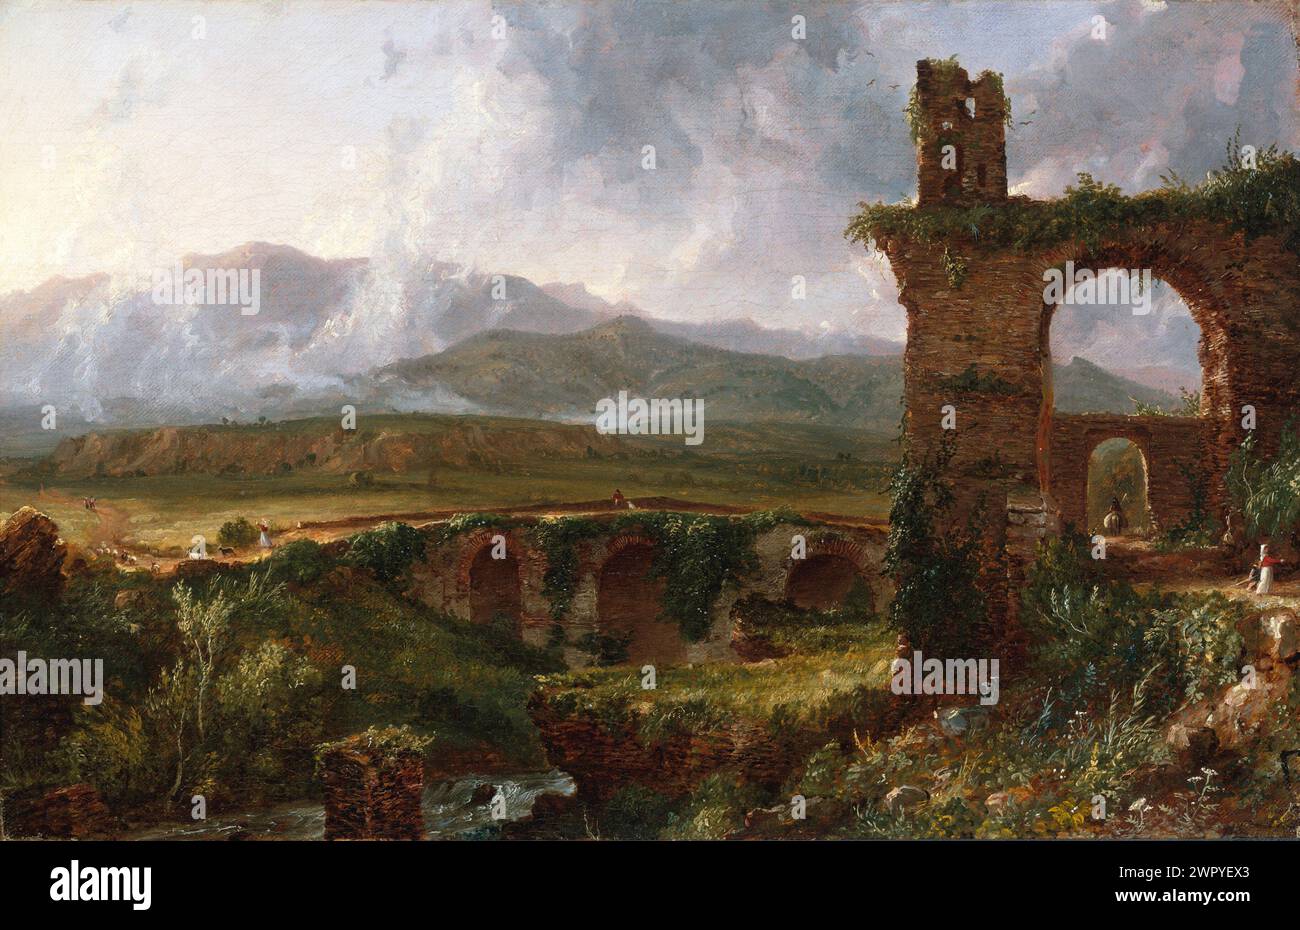 Pintura al óleo del artista estadounidense Thomas Cole, fundador de la Escuela de Arte del Río Hudson, Una vista cerca de Tivoli (mañana) ca. 1832 Foto de stock